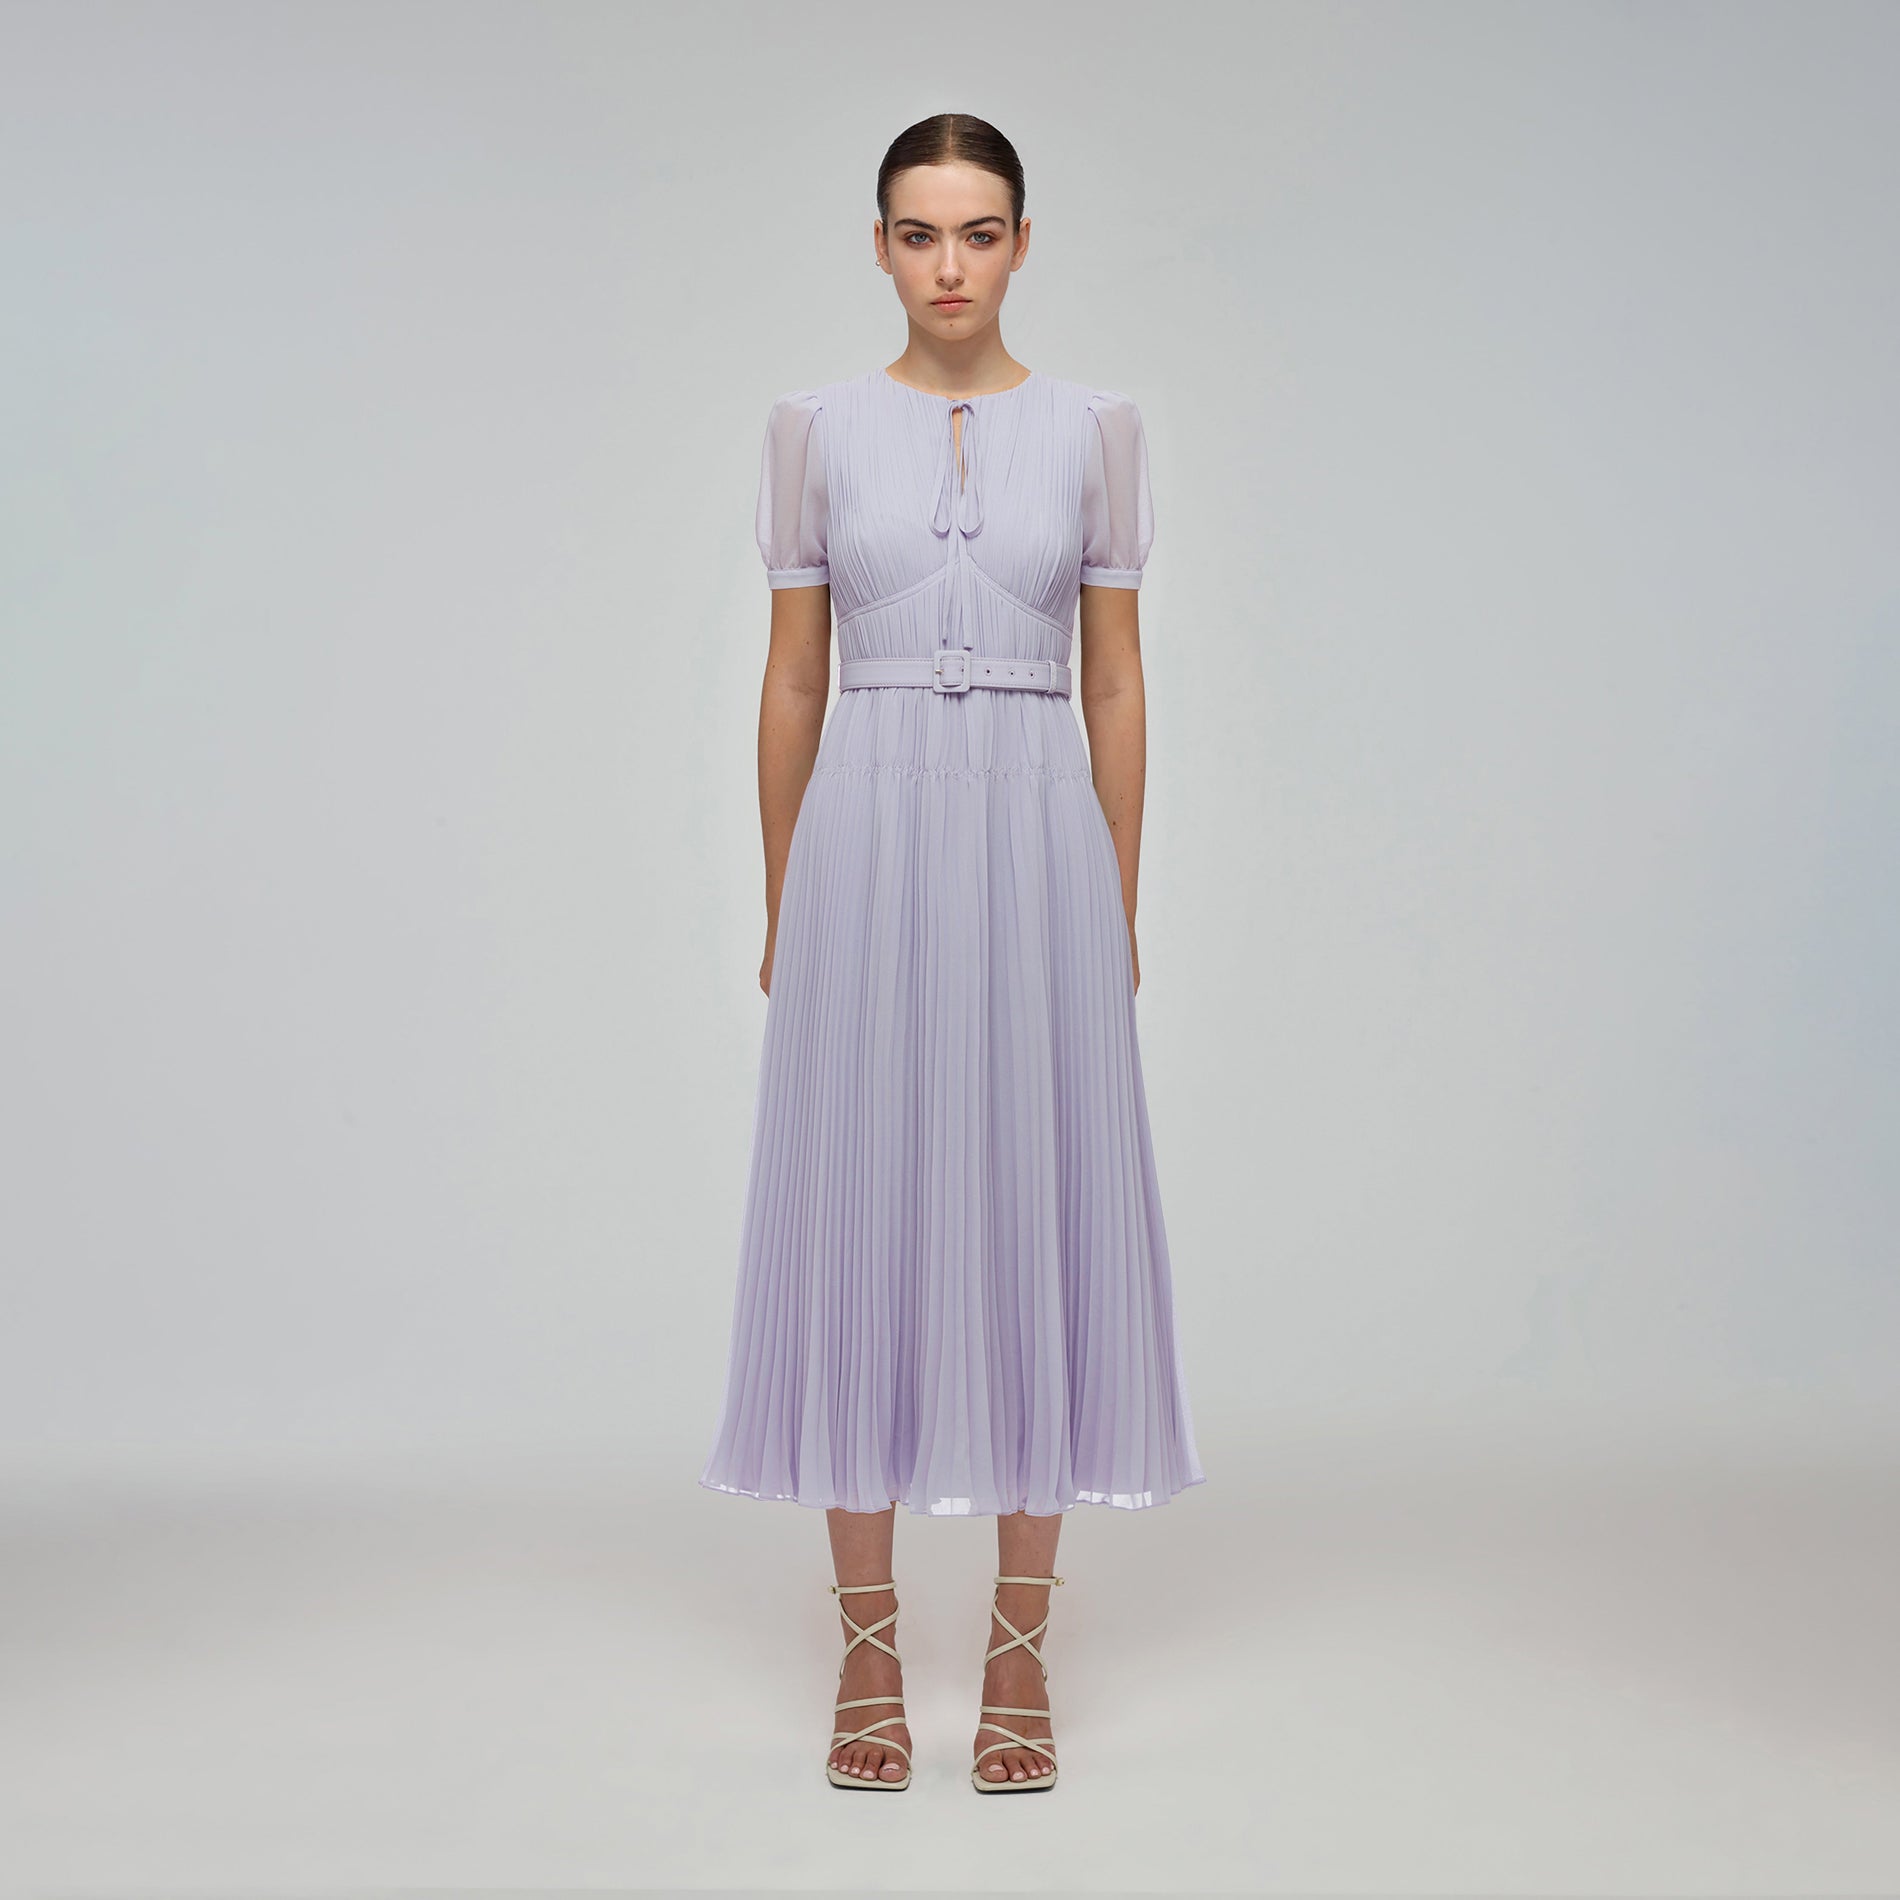 A woman wearing the Lilac Chiffon Midi Dress